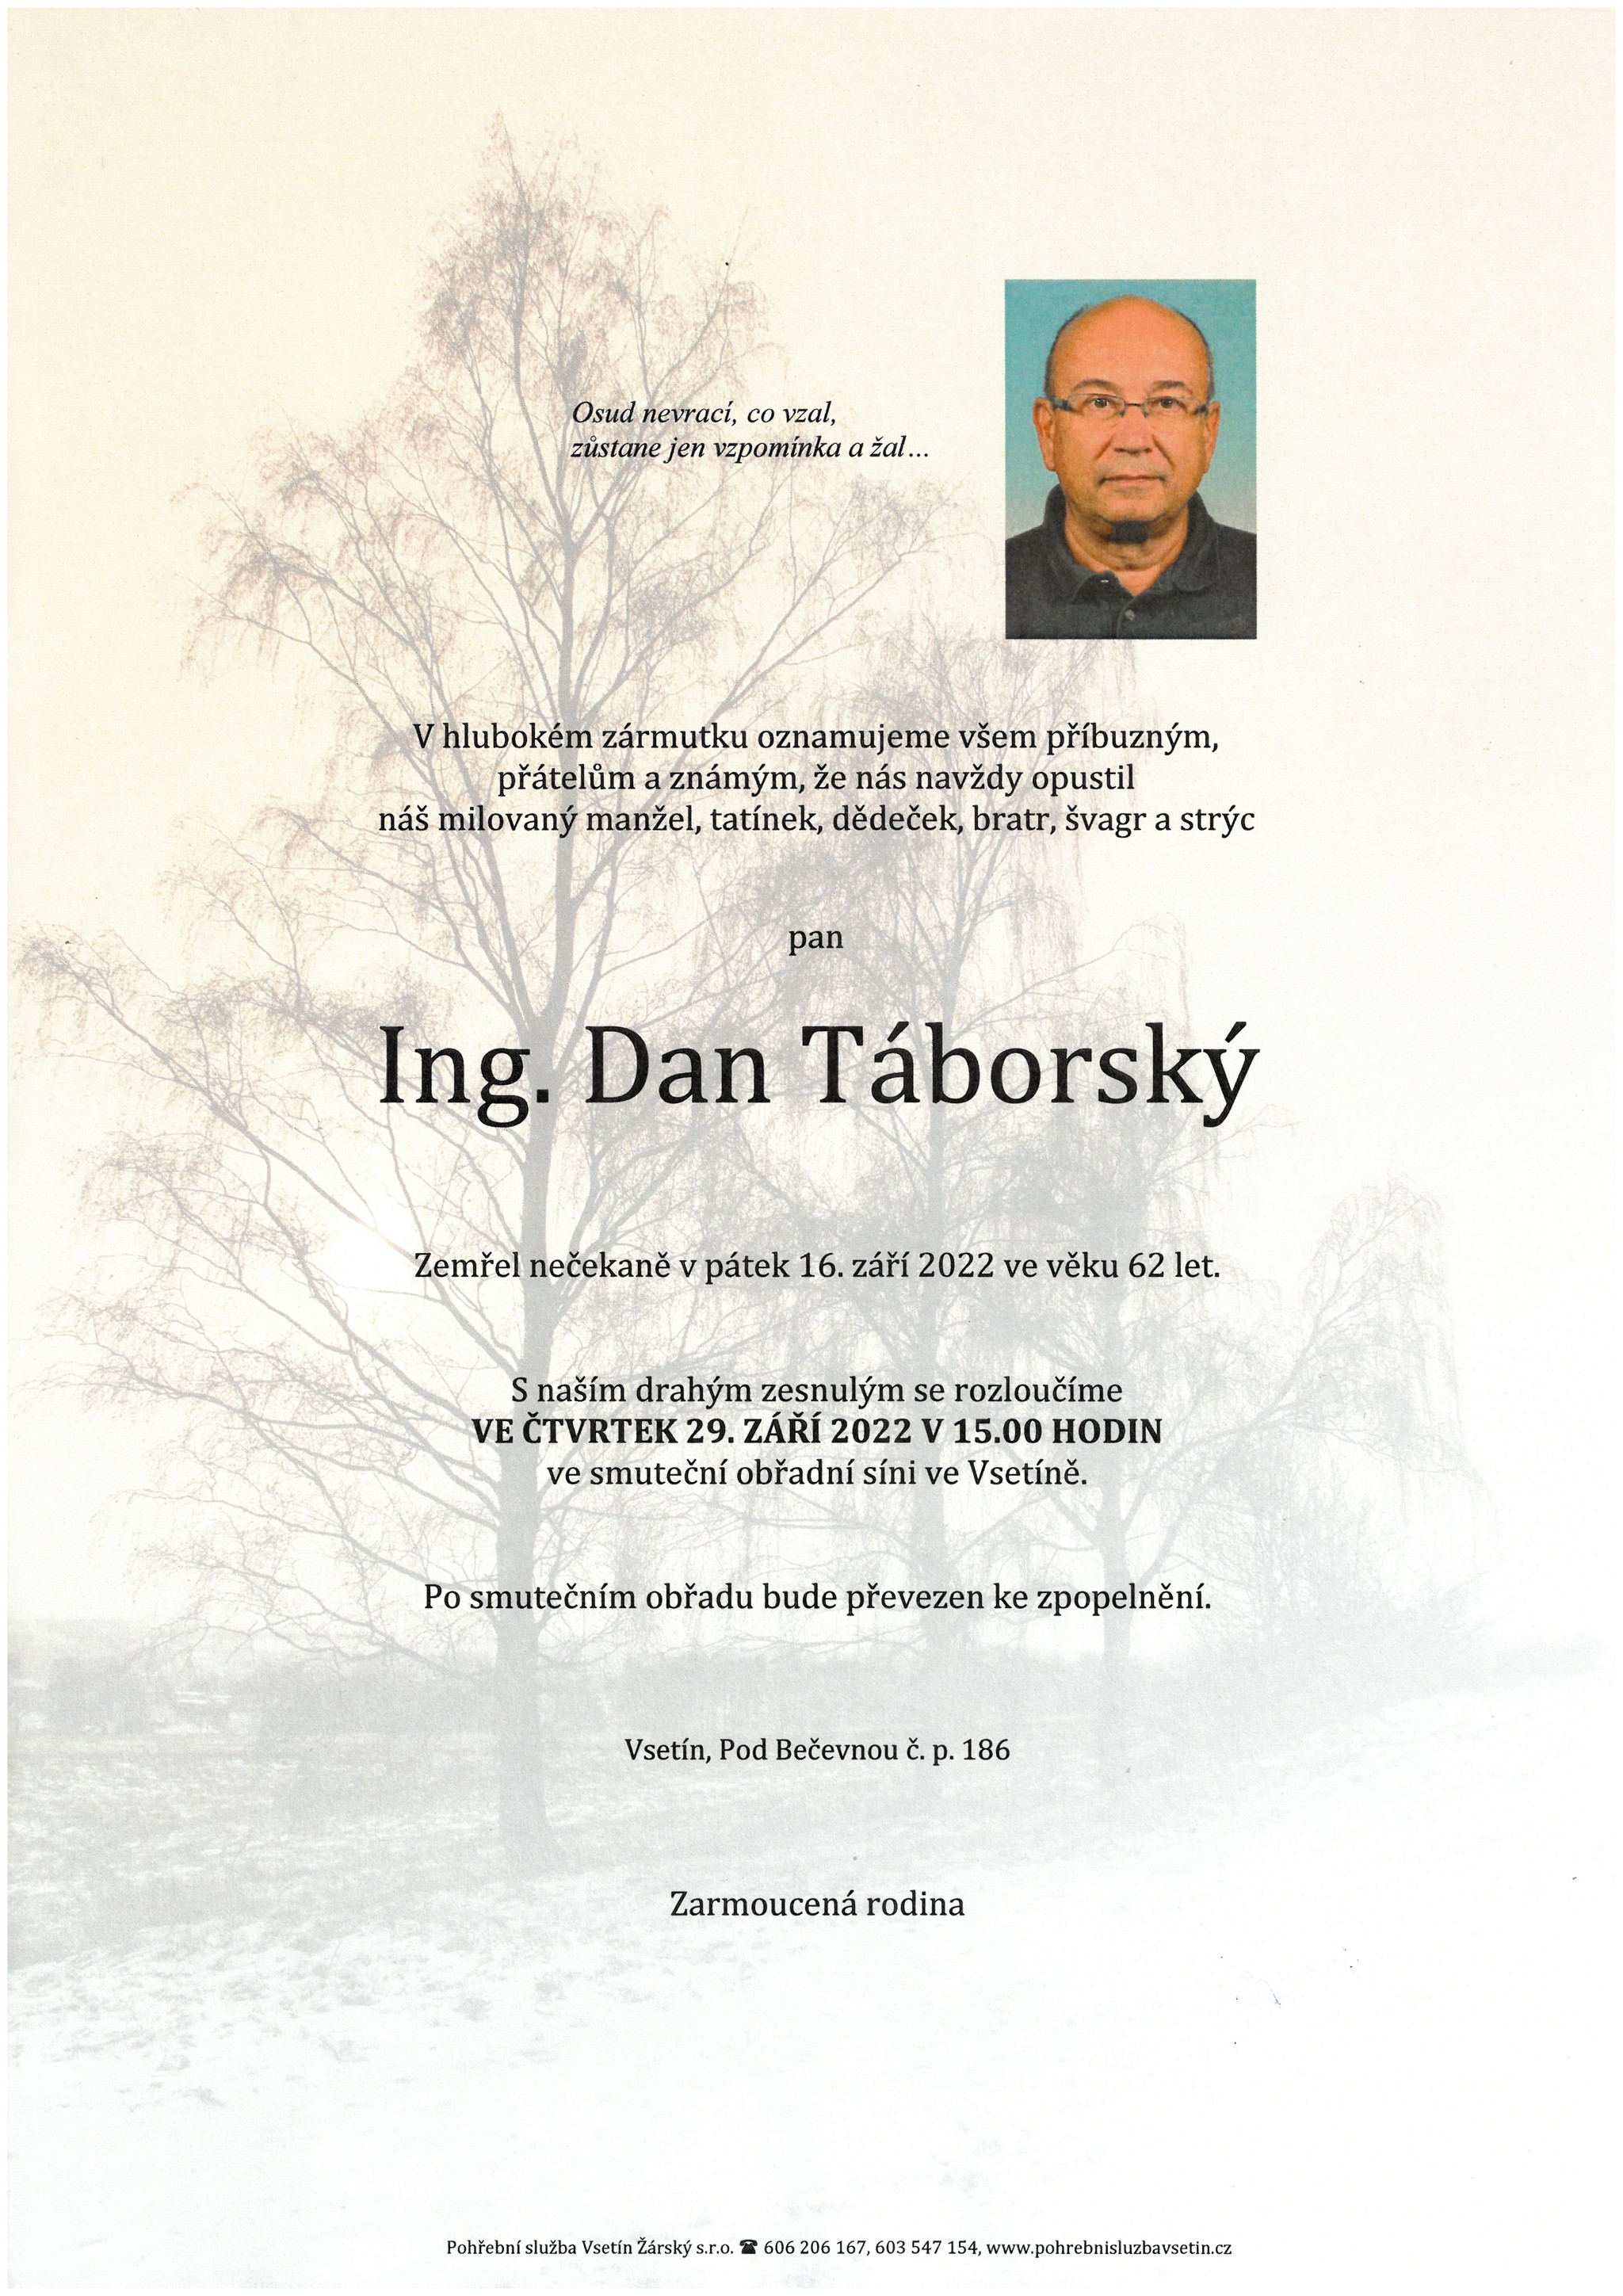 Ing. Dan Táborský